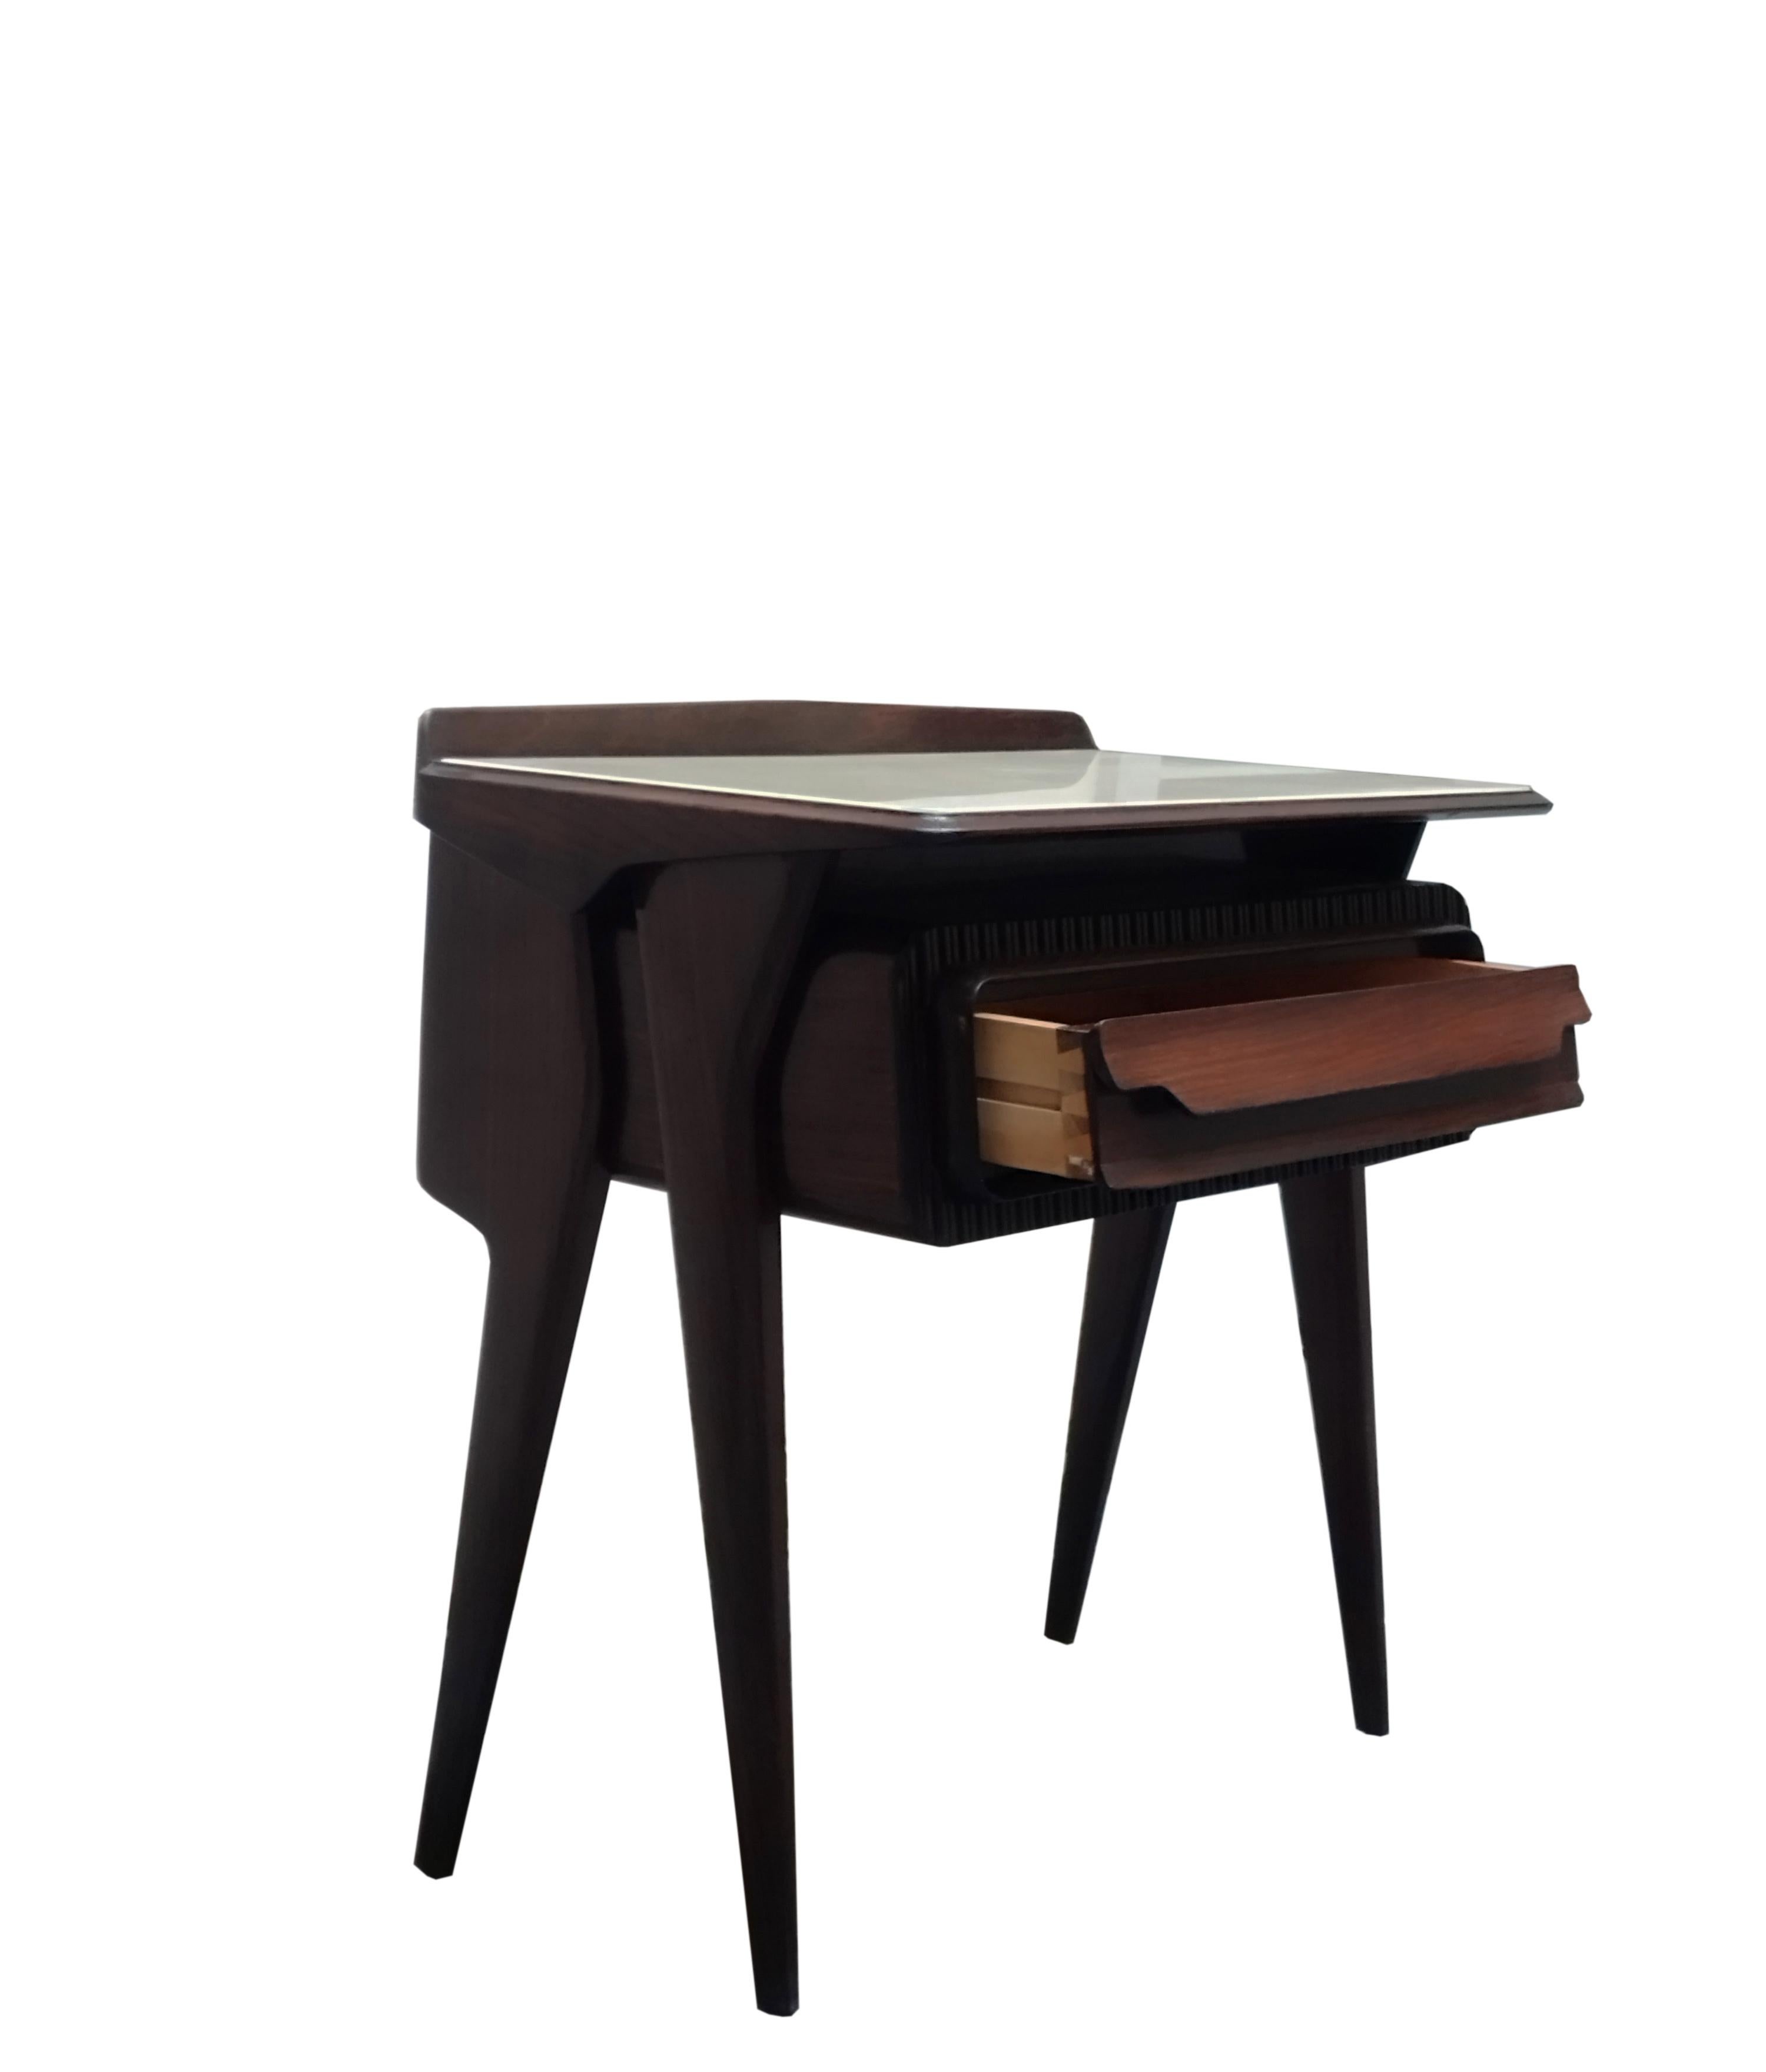 Table de chevet en bois conçue par Vittorio Dassi dans les années 1950.
 Son unicité esthétique réside dans le design sculptural original de la forme du tiroir et des supports latéraux, ainsi que dans le plateau en verre. Vintage By en excellent